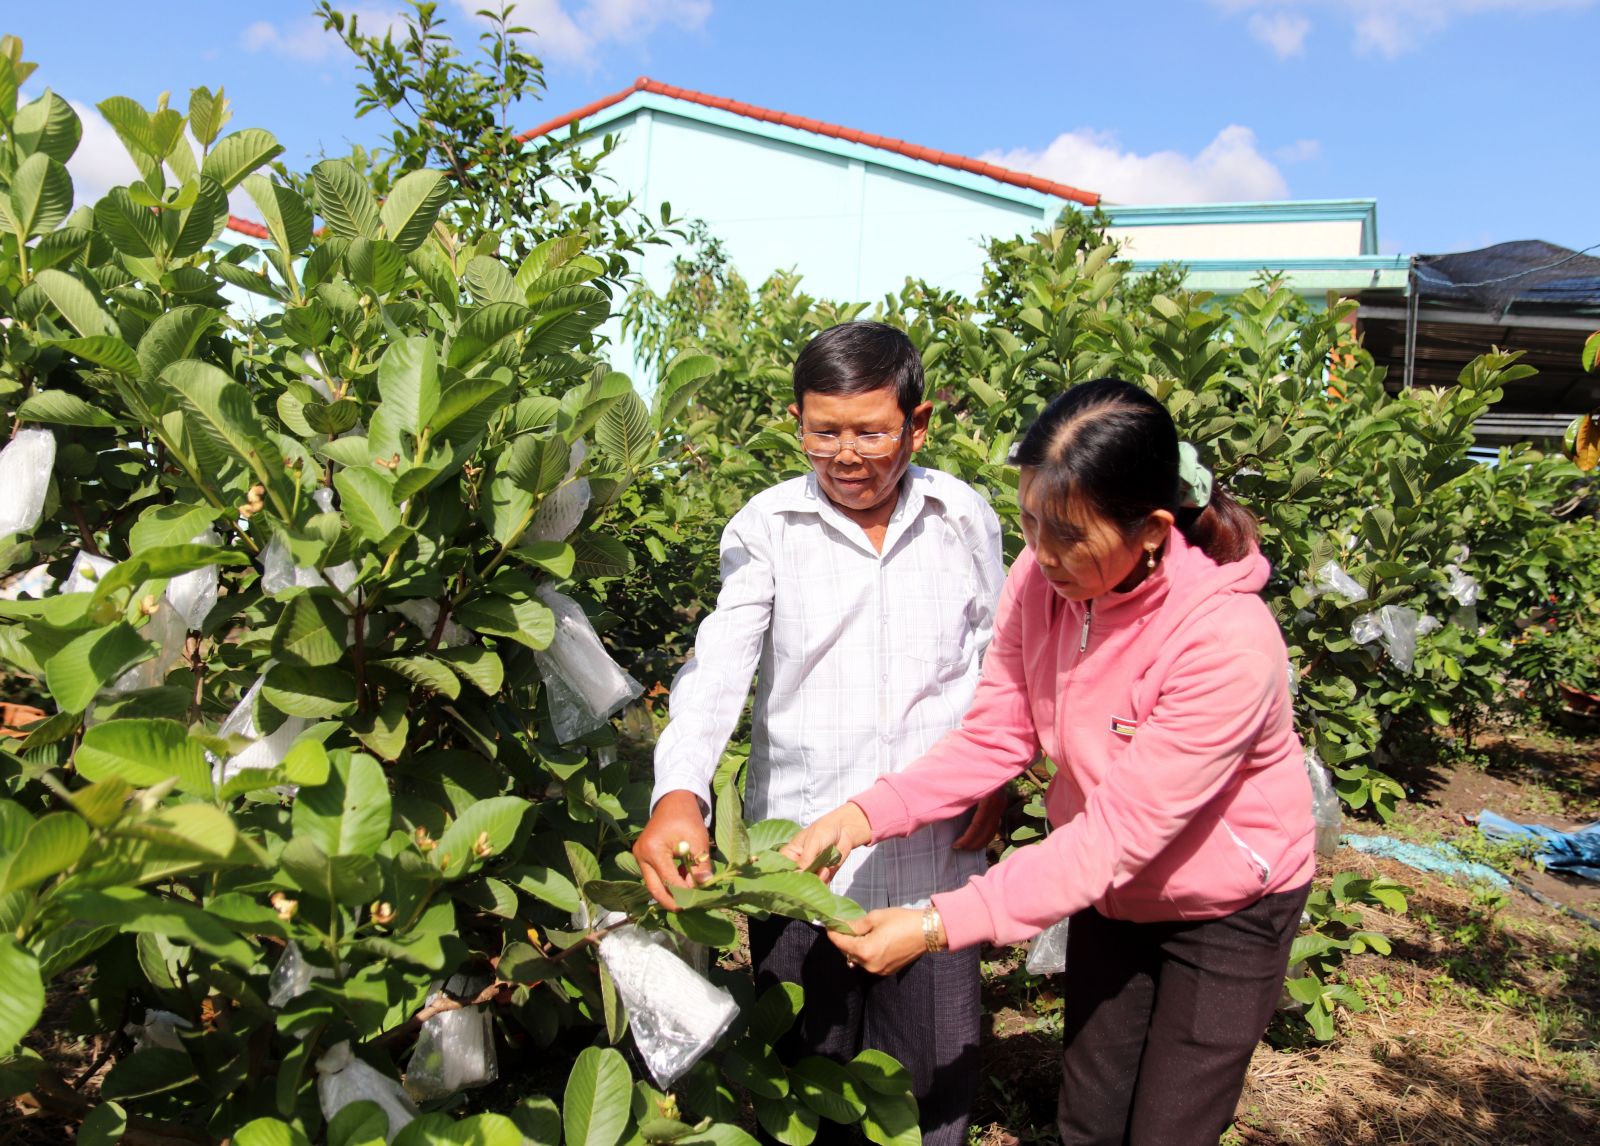 Ông Nguyễn Văn Vĩnh luôn nghiên cứu, quan tâm đến việc chuyển đổi cơ cấu cây trồng, vật nuôi phù hợp